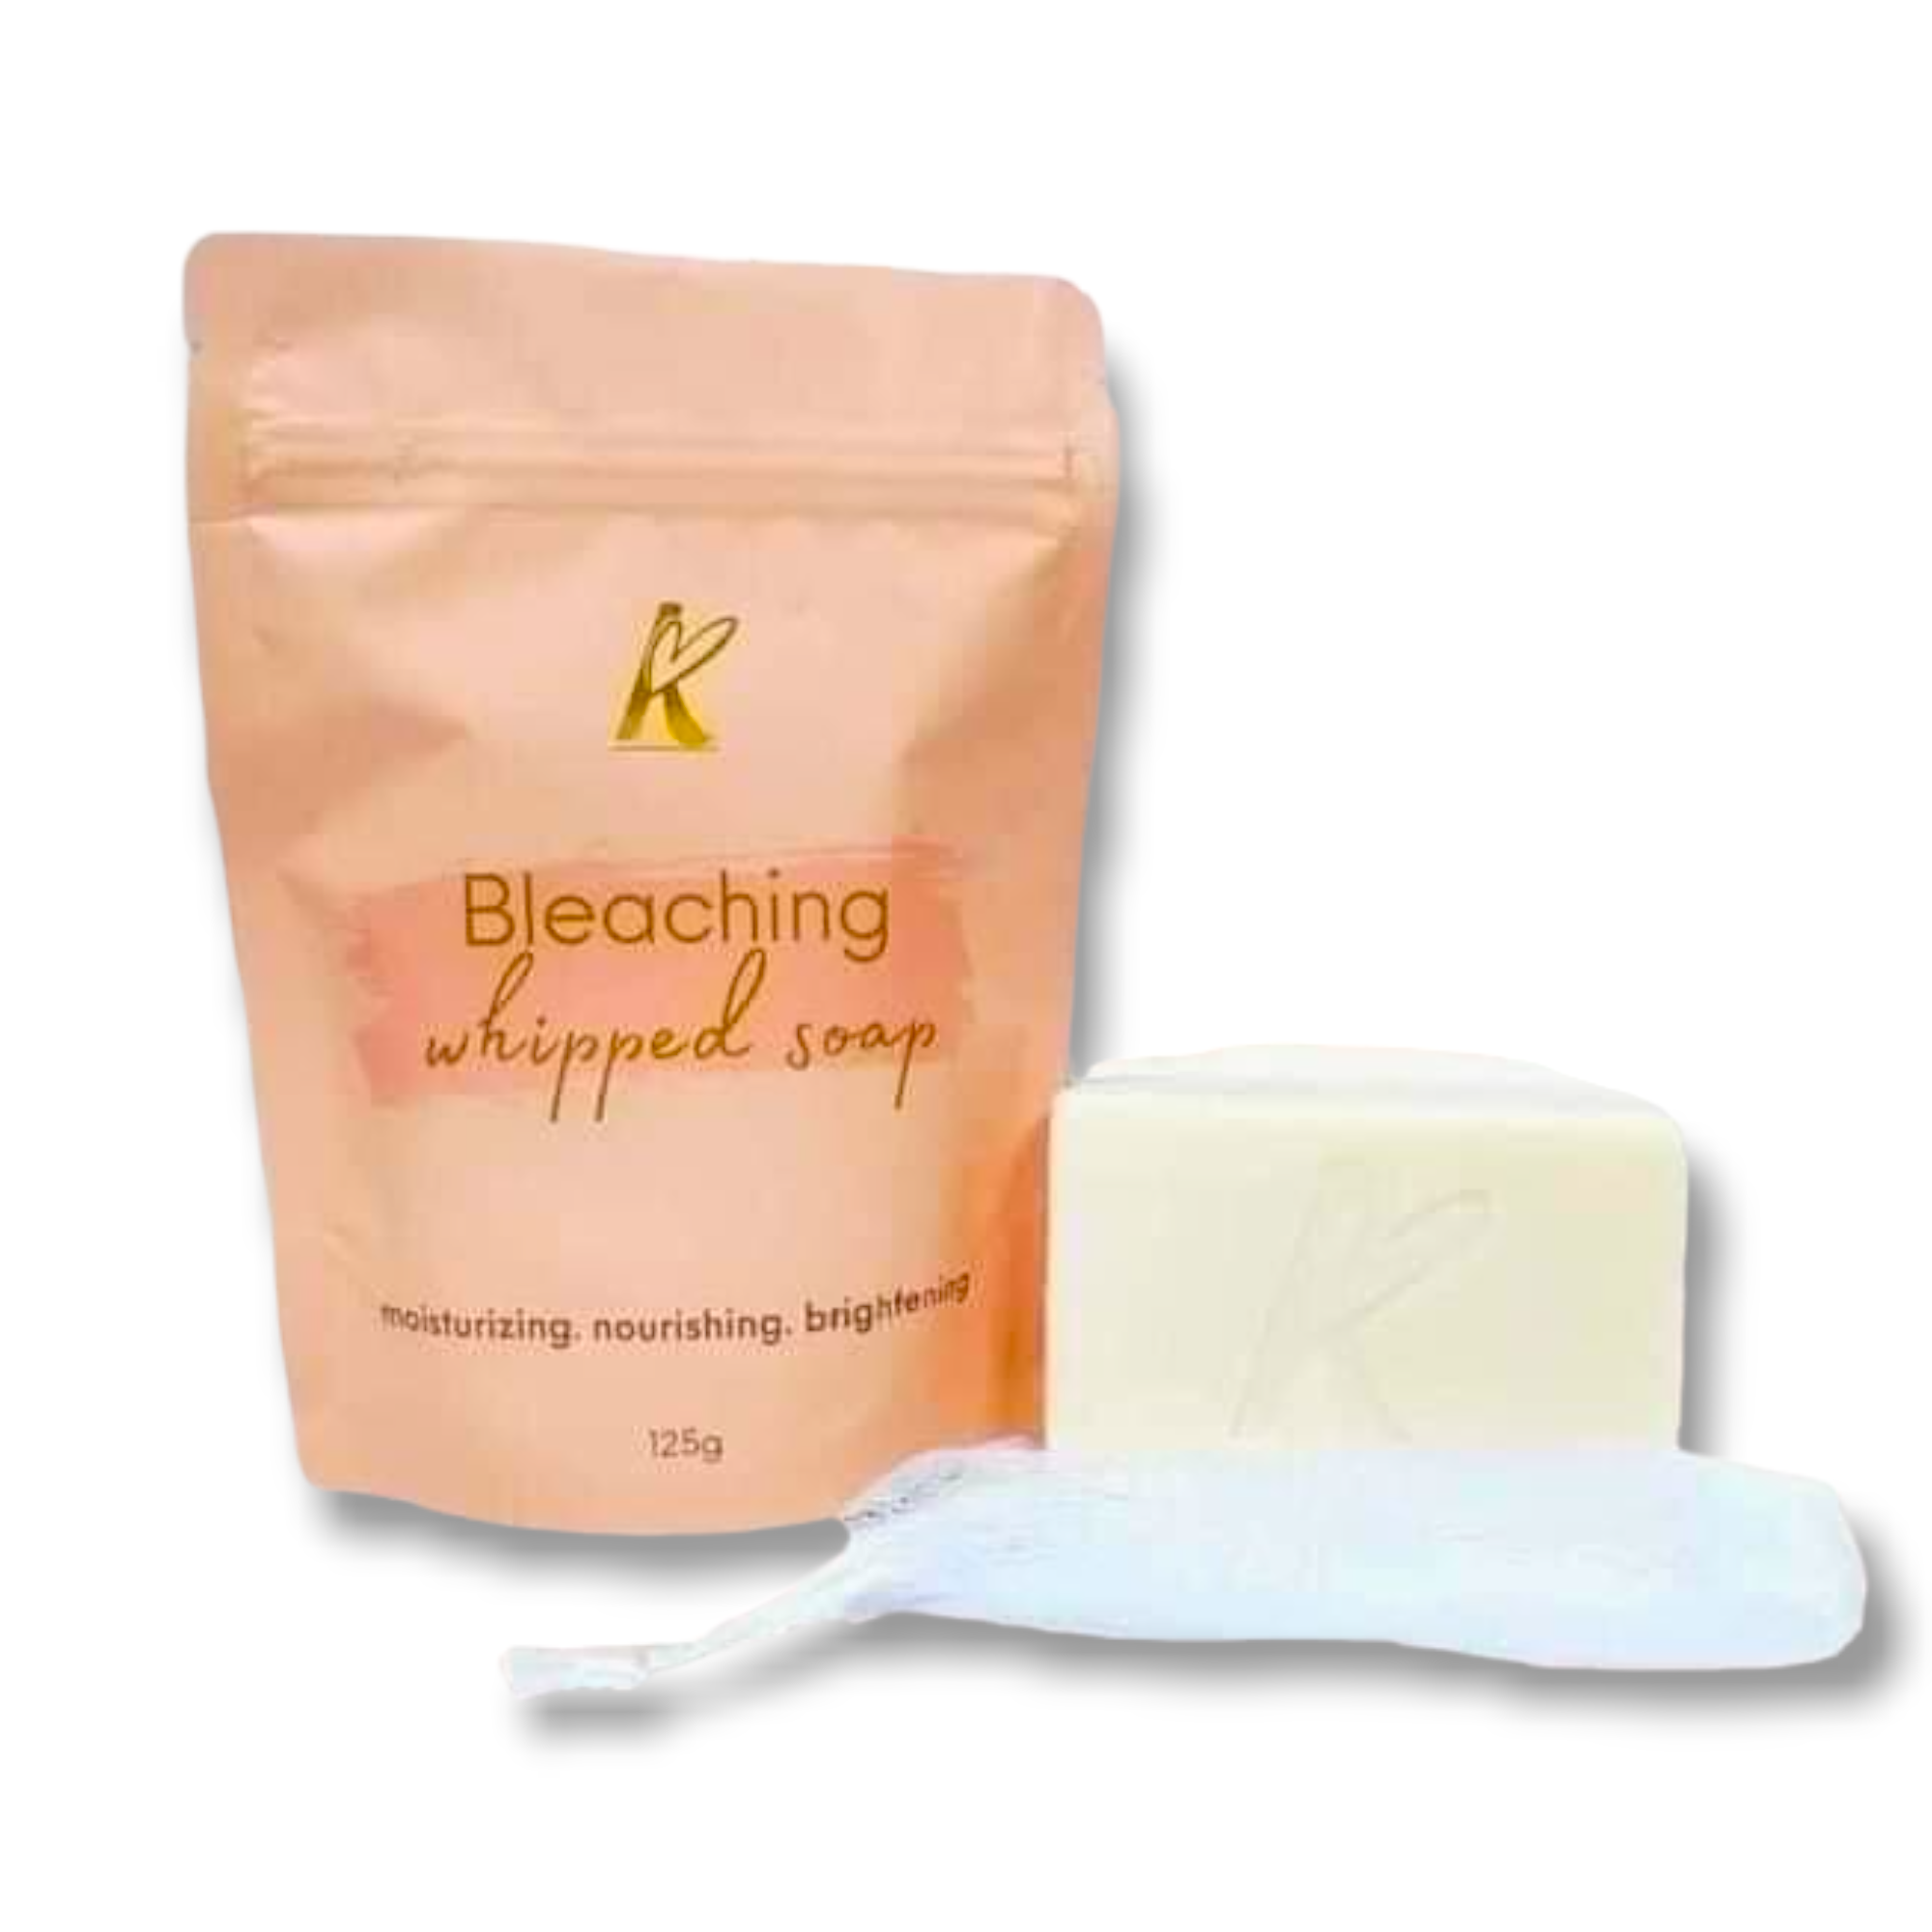 K Beaute Bleaching Whipped Soap 125g